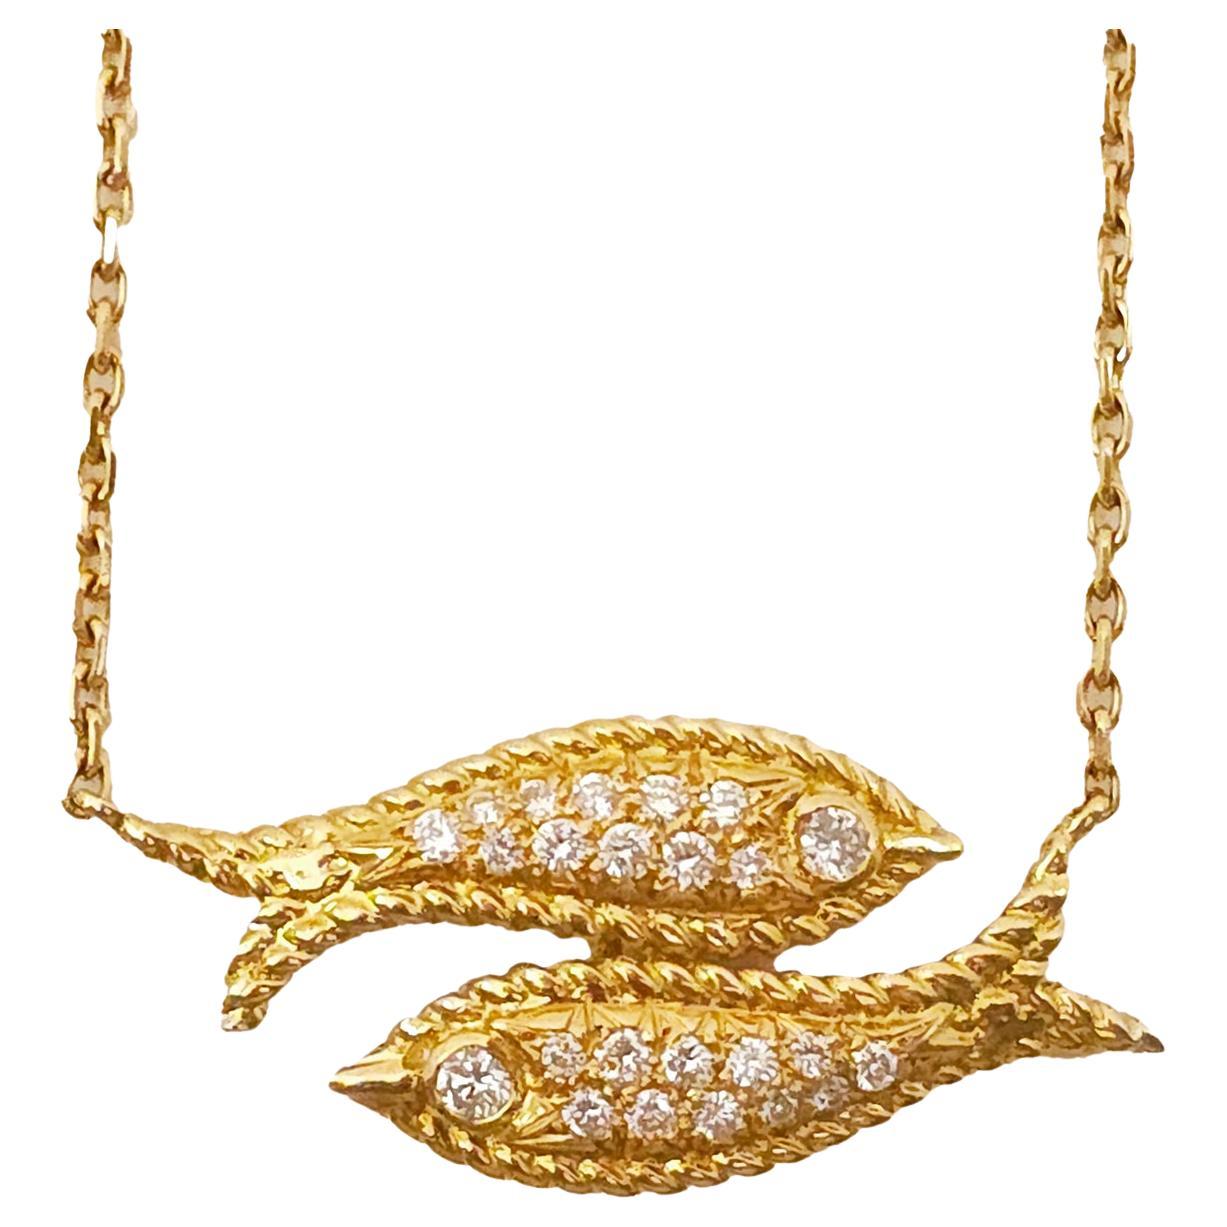 Fred Paris Diamond and 18 Karat Gold Pisces Pendant Necklace